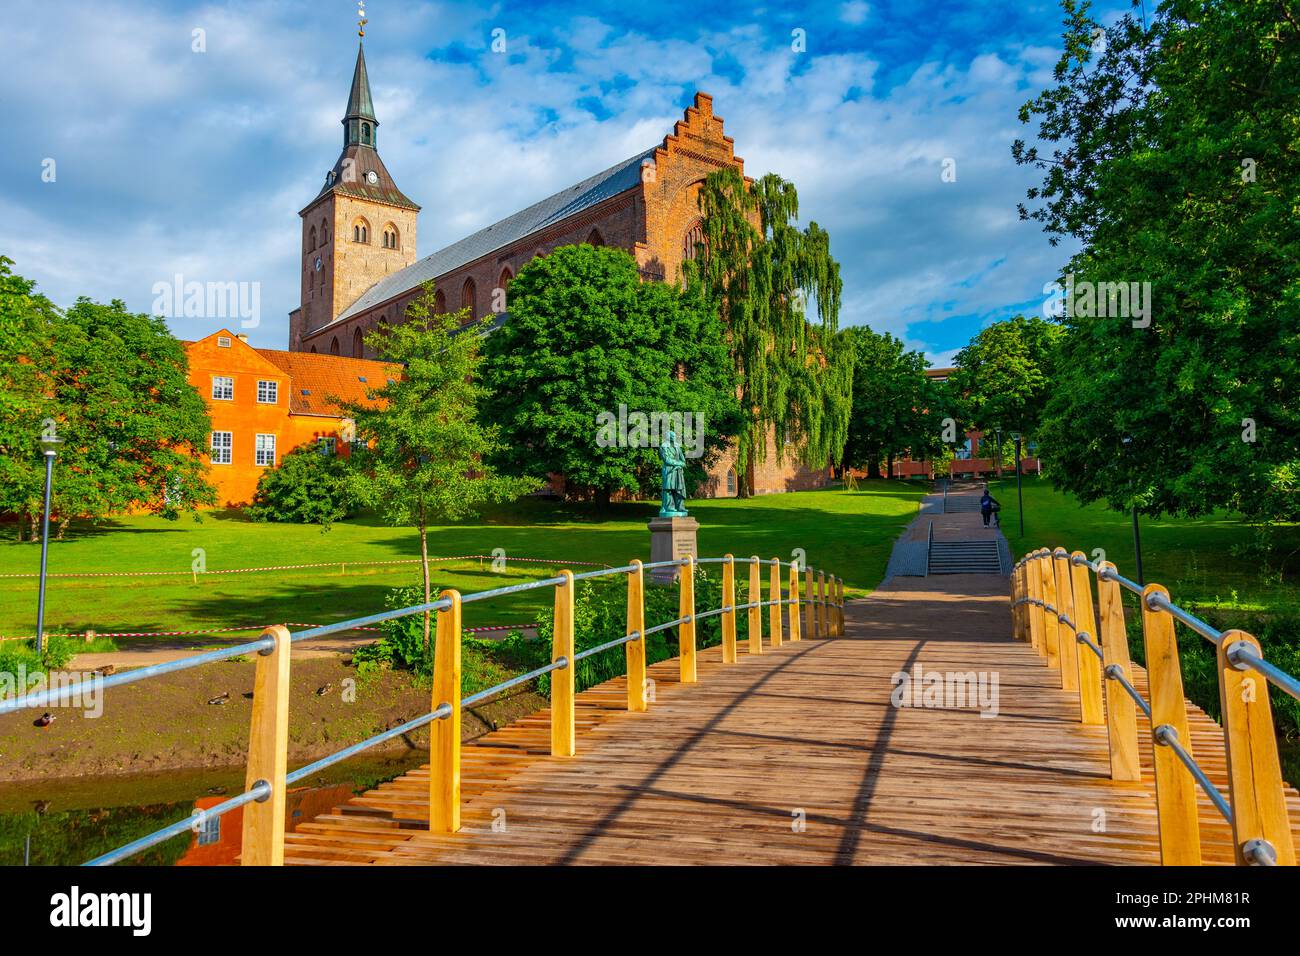 St. Cathédrale de Canute dans la ville danoise d'Odense. Banque D'Images